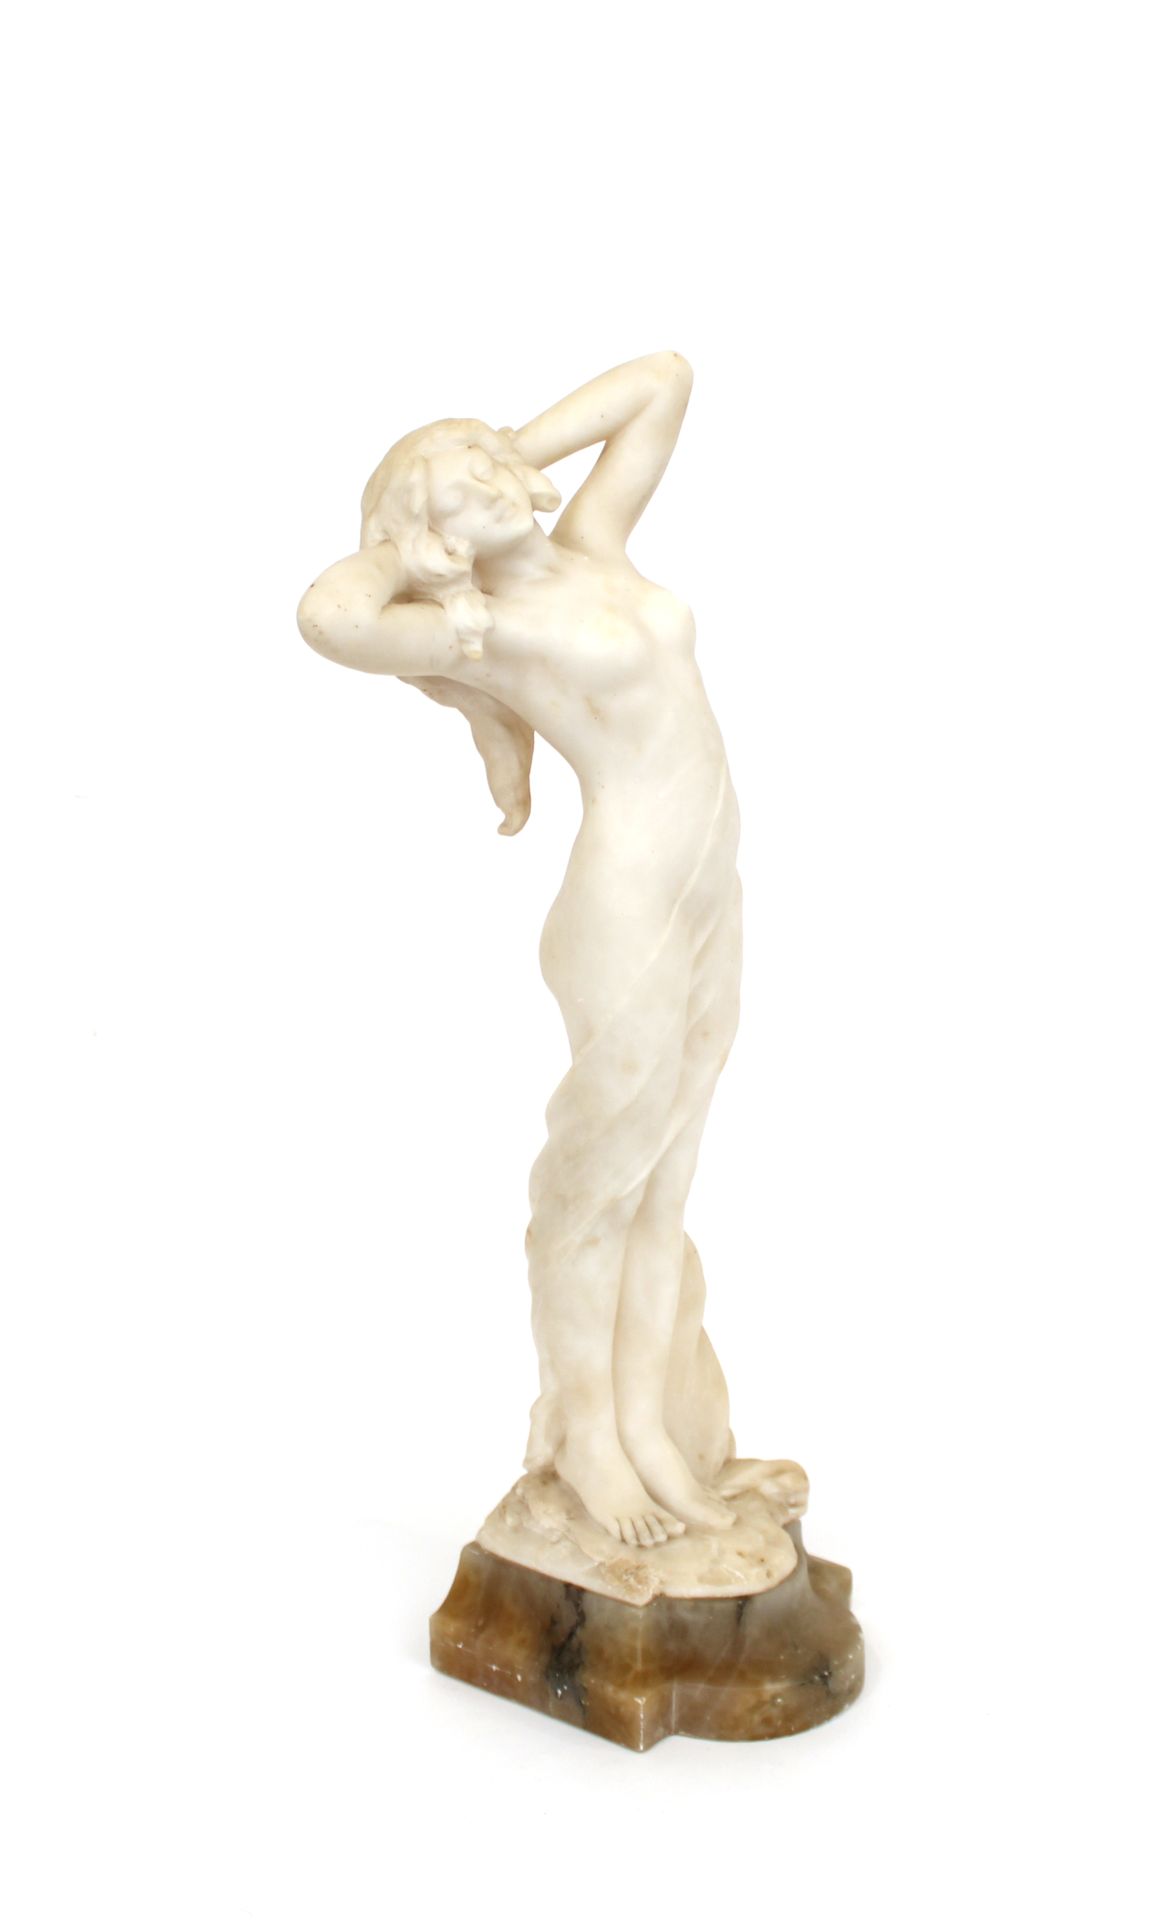 Null Scuola francese circa 1900
Nudo femminile in alabastro
H. 56 cm